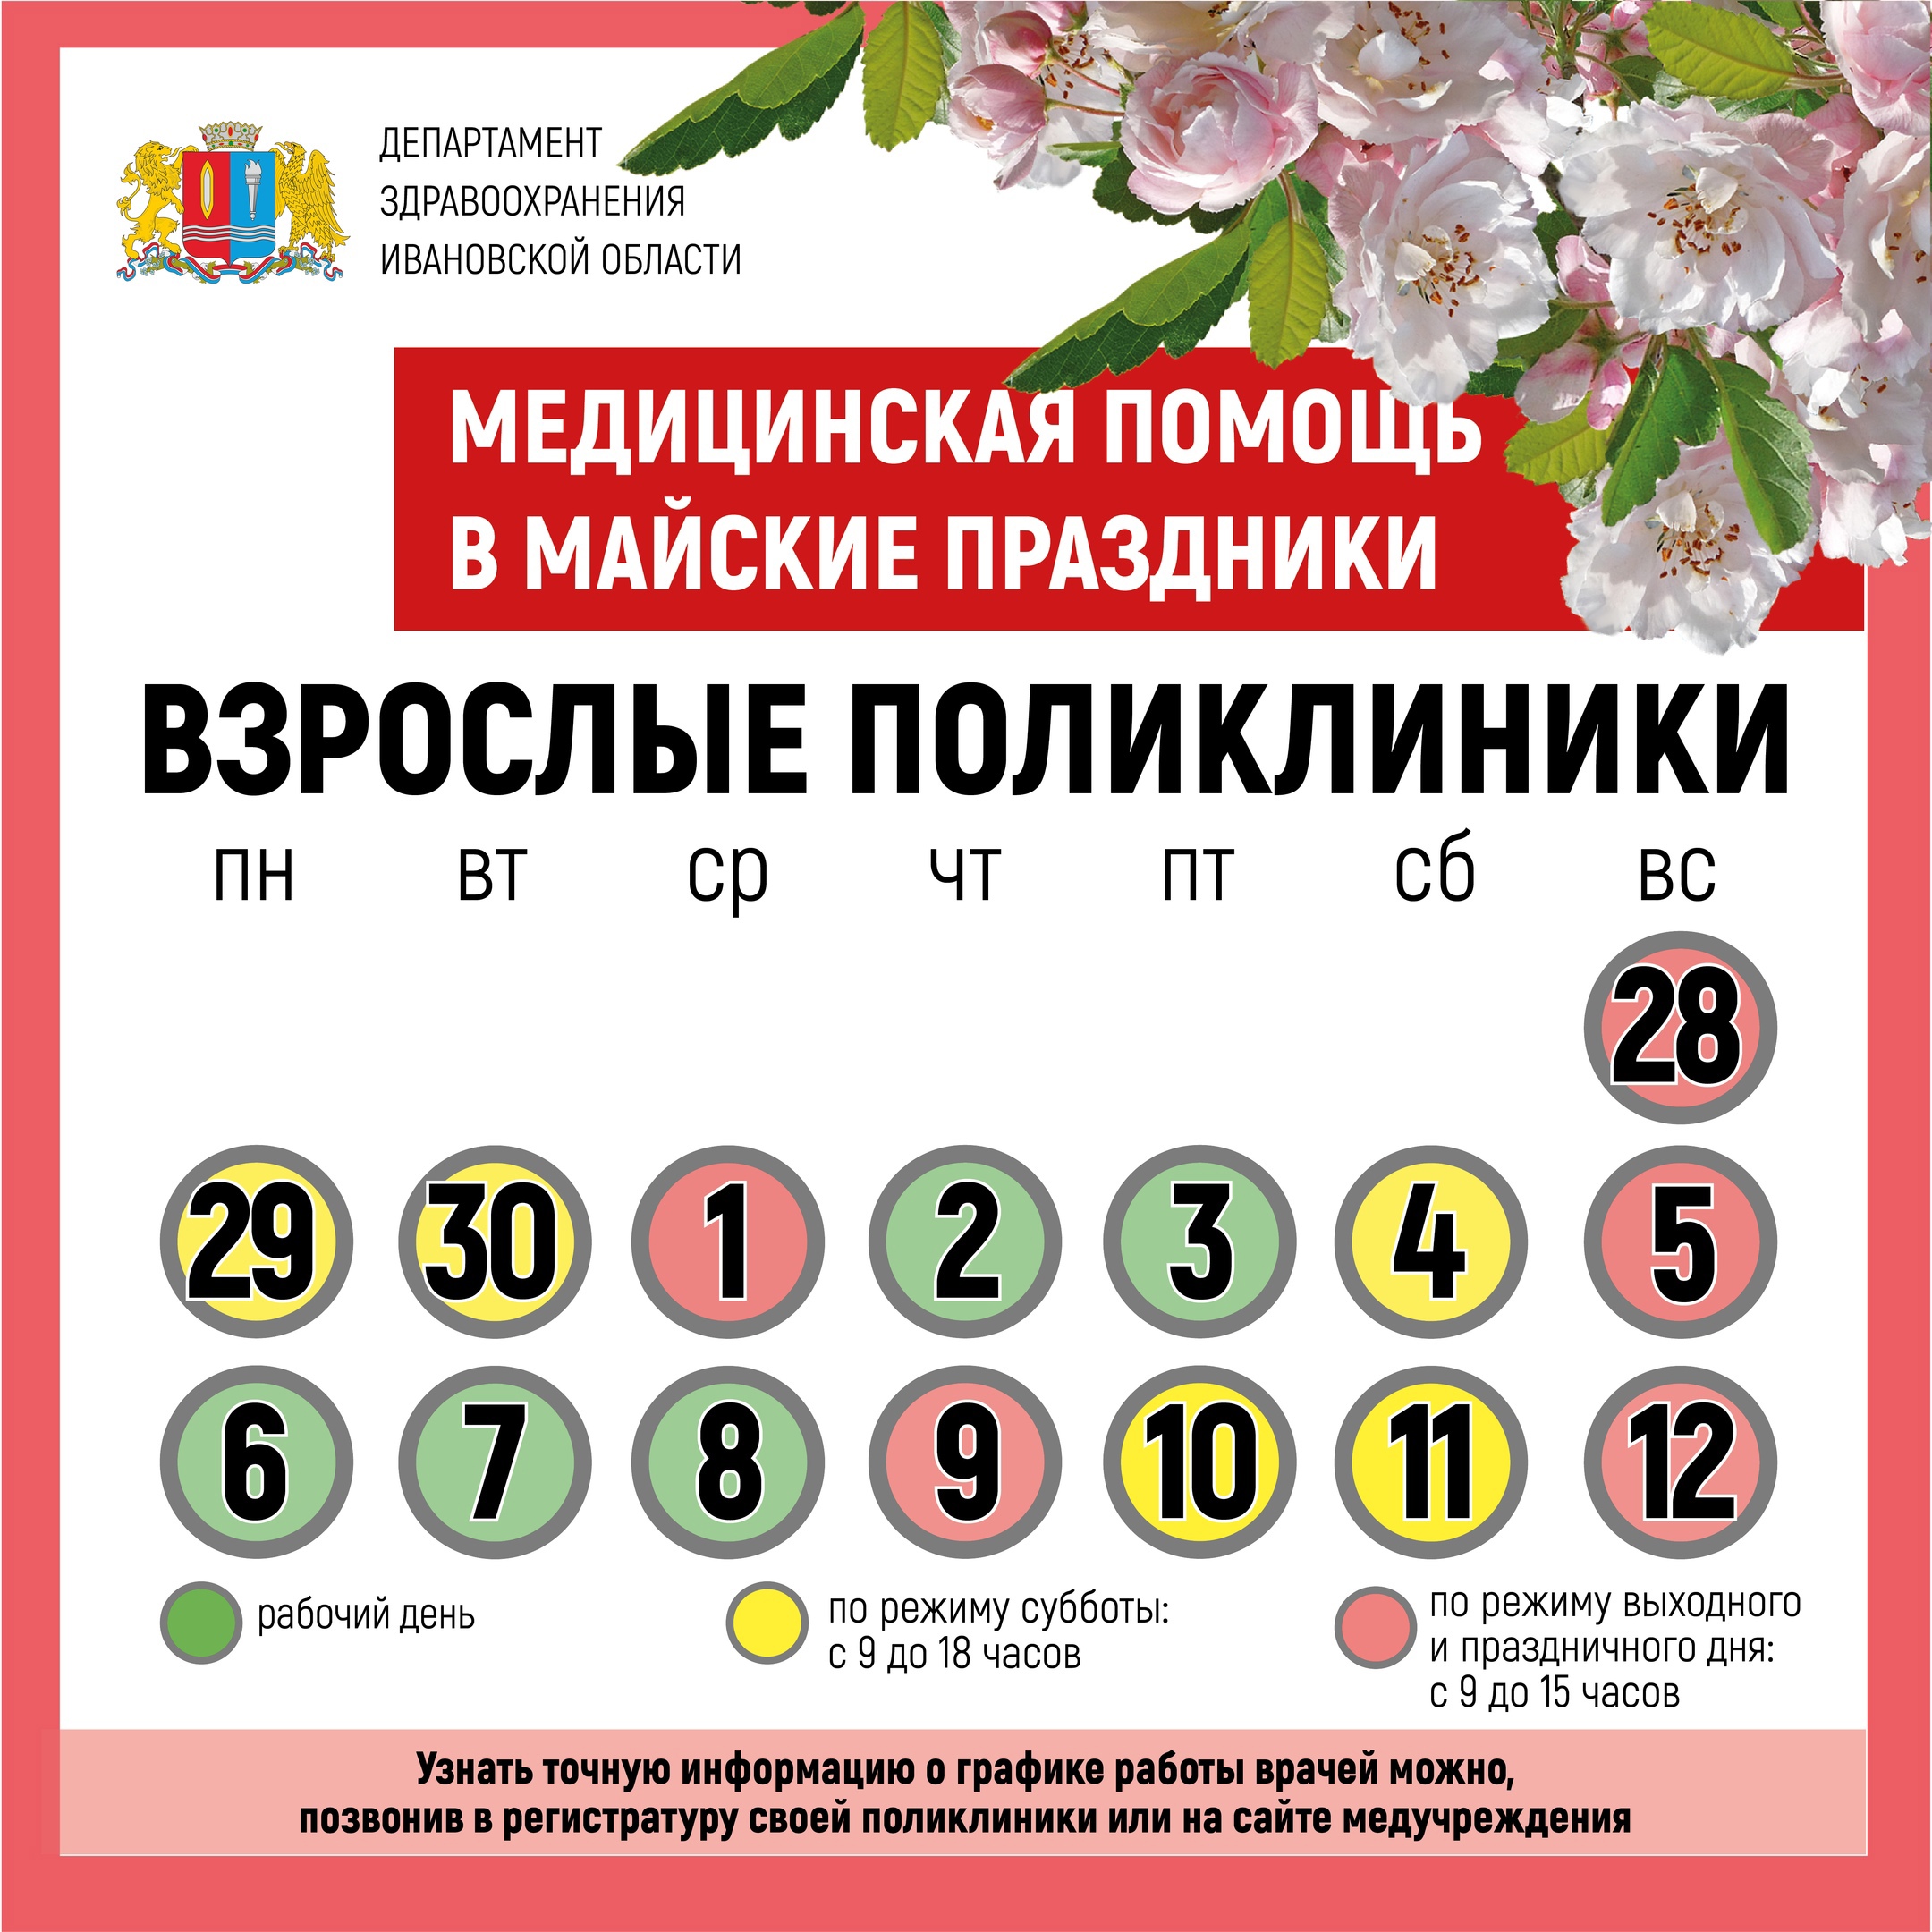 В майские праздники медучреждения Ивановской области работают по особому графику